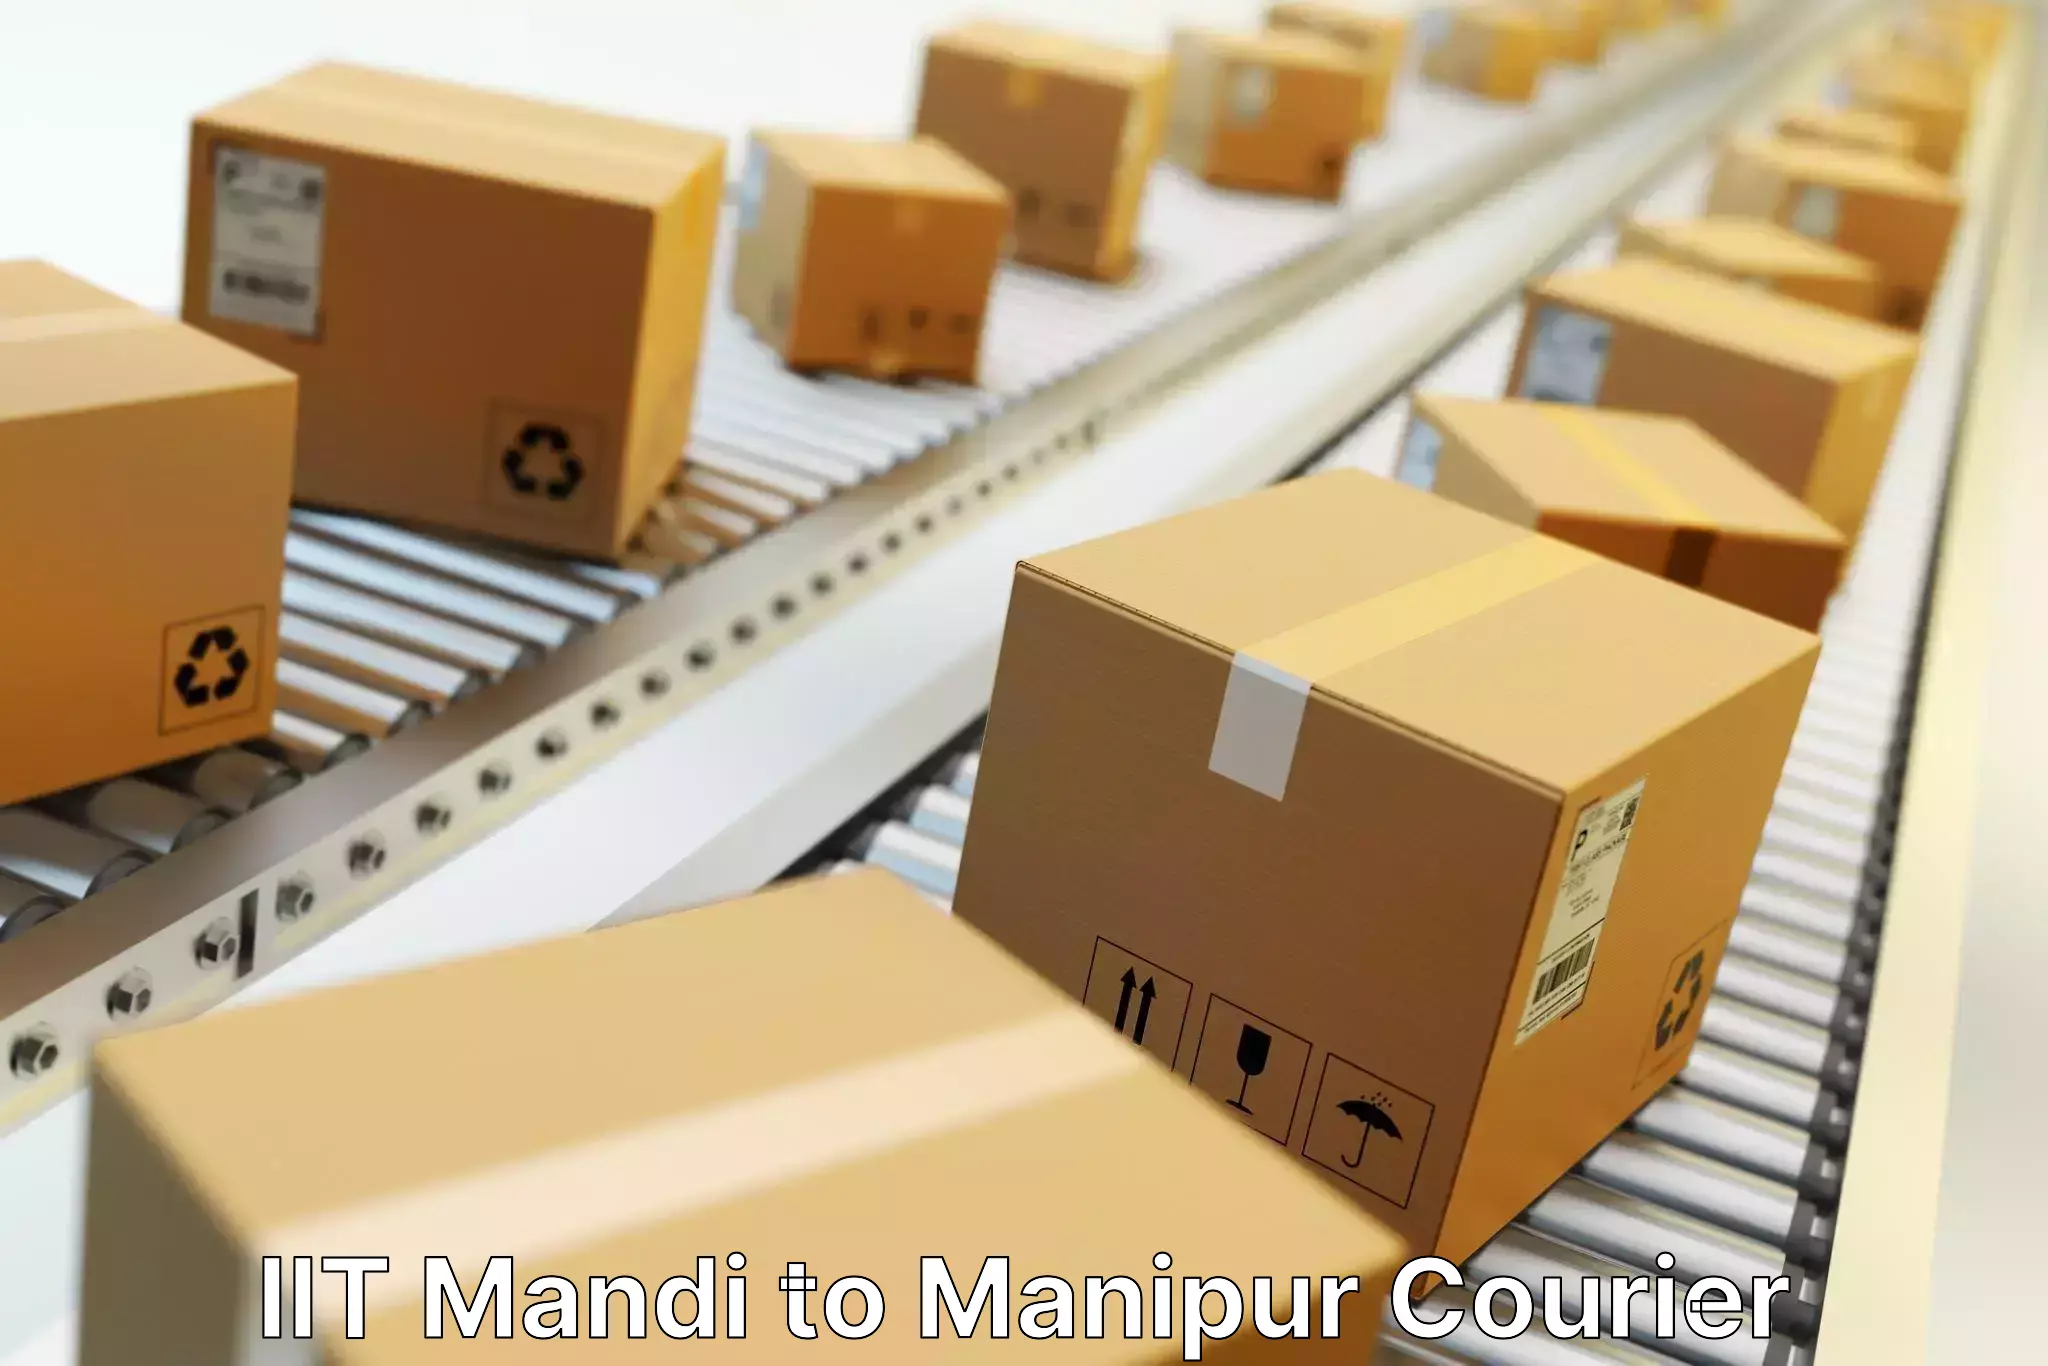 Express package handling IIT Mandi to Kanti